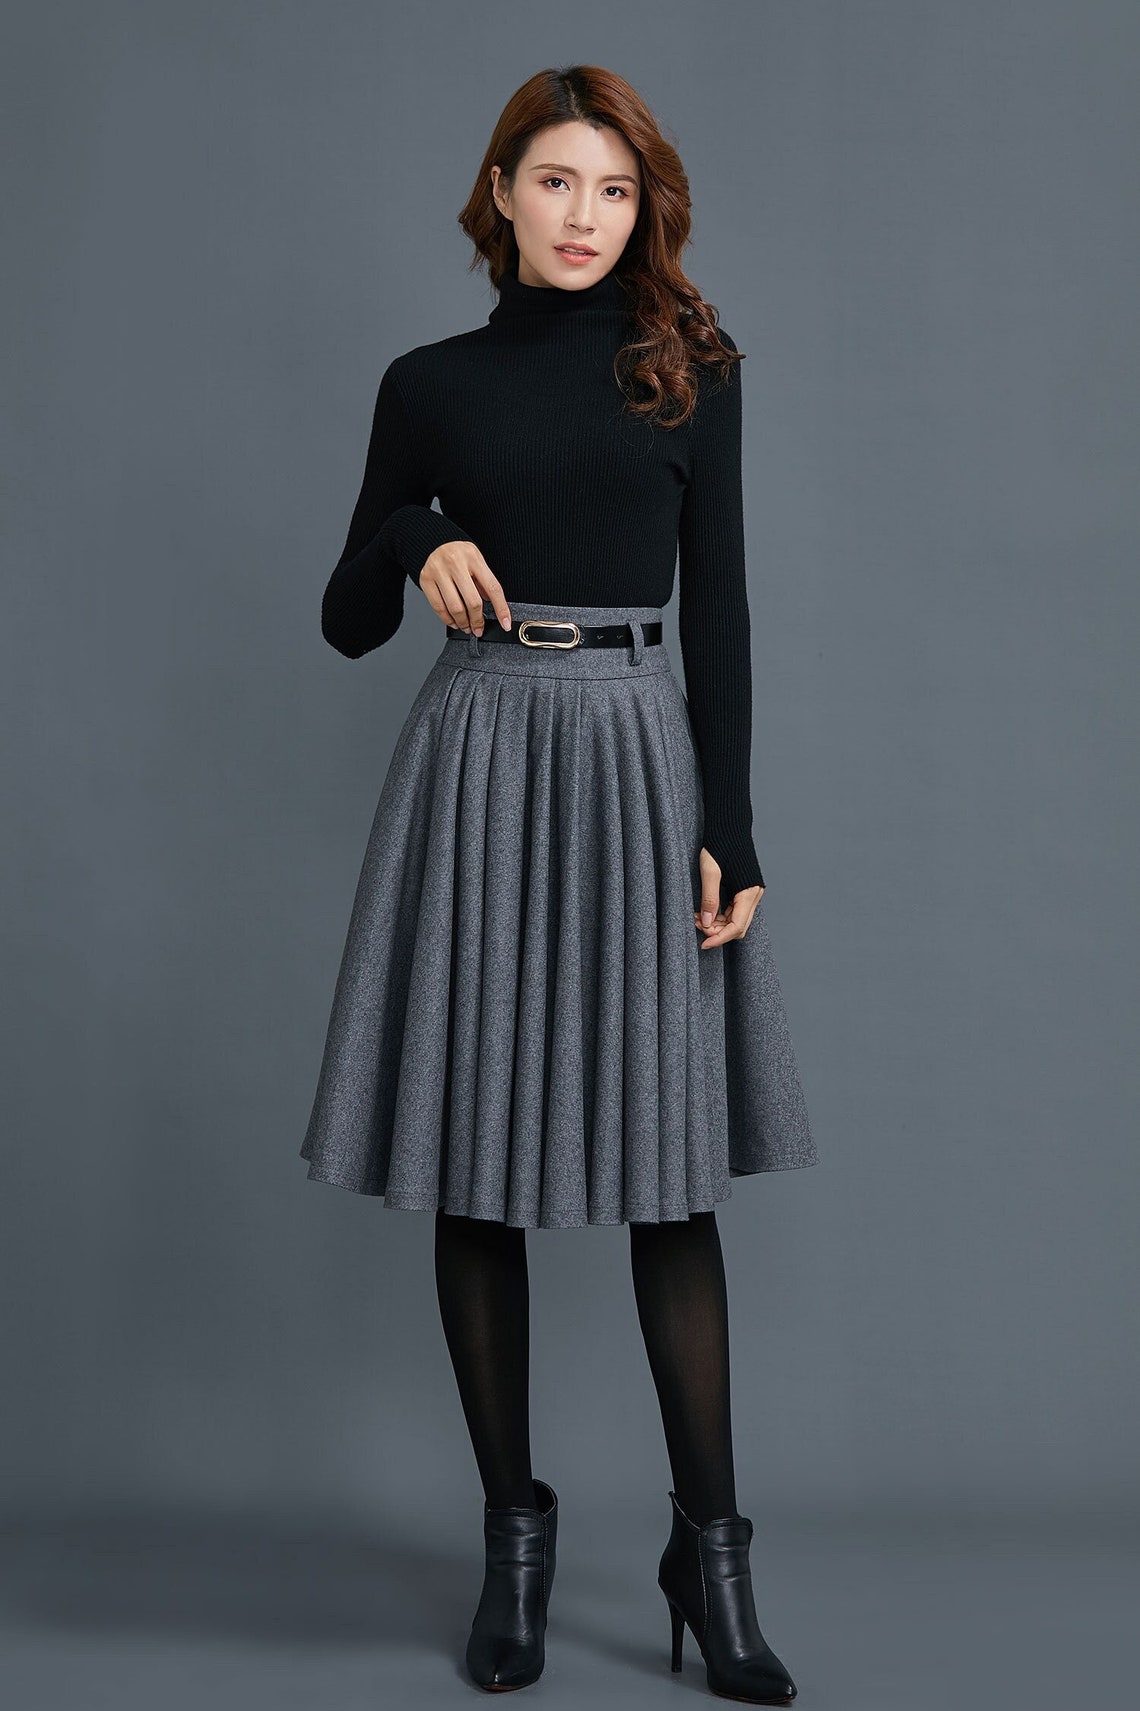 Circle Wool Skirt for Women Winter Pleated Midi skirt Skater | Etsy